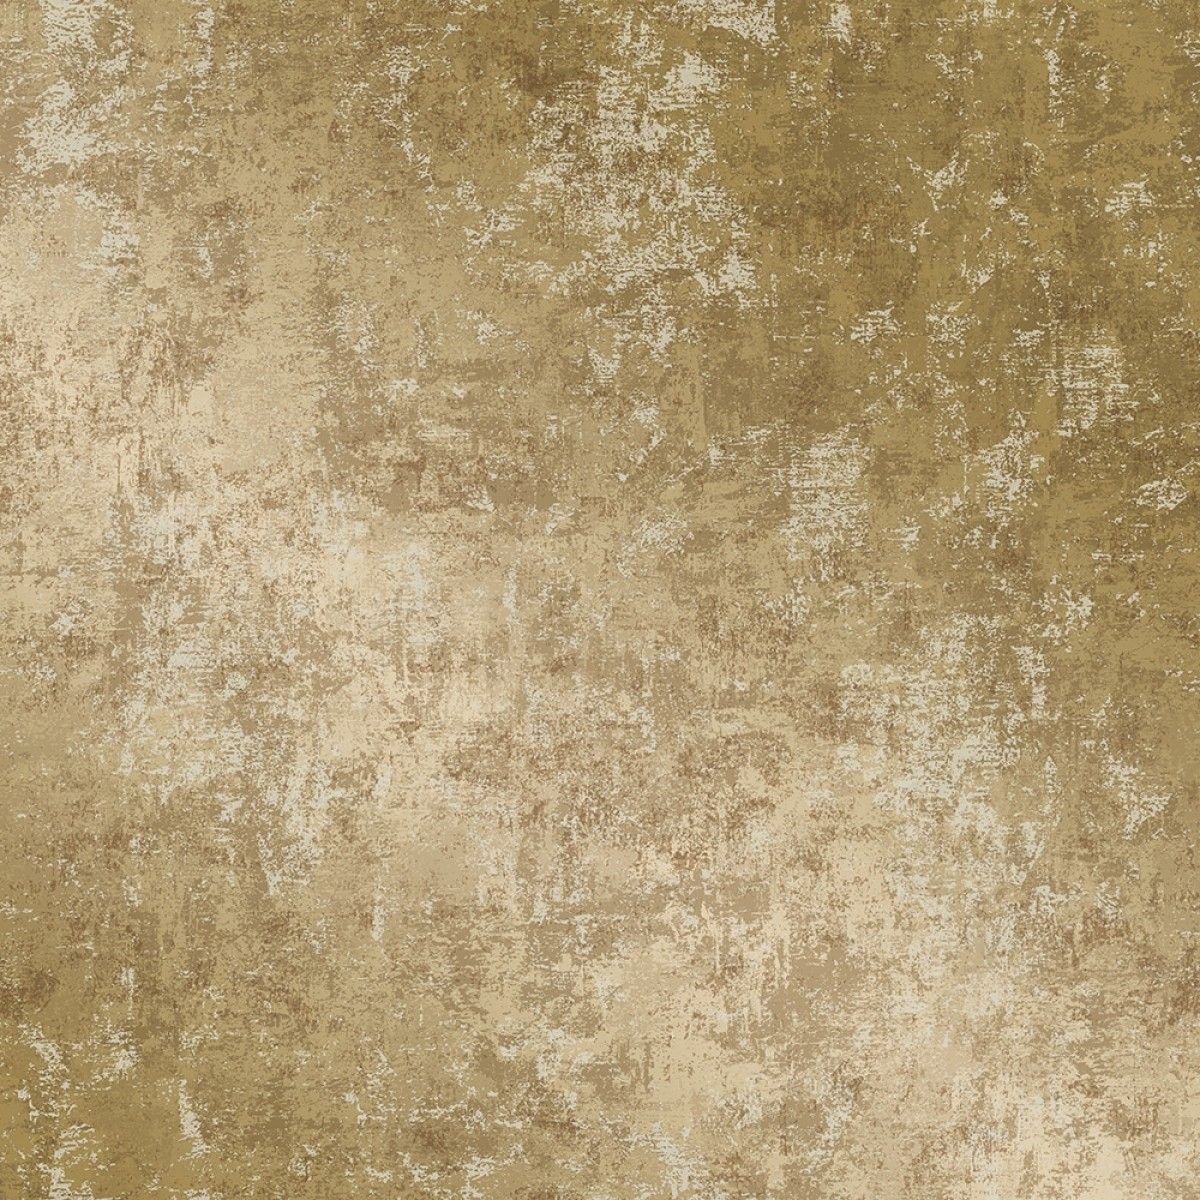 Distressed Gold Leaf Wallpaper design